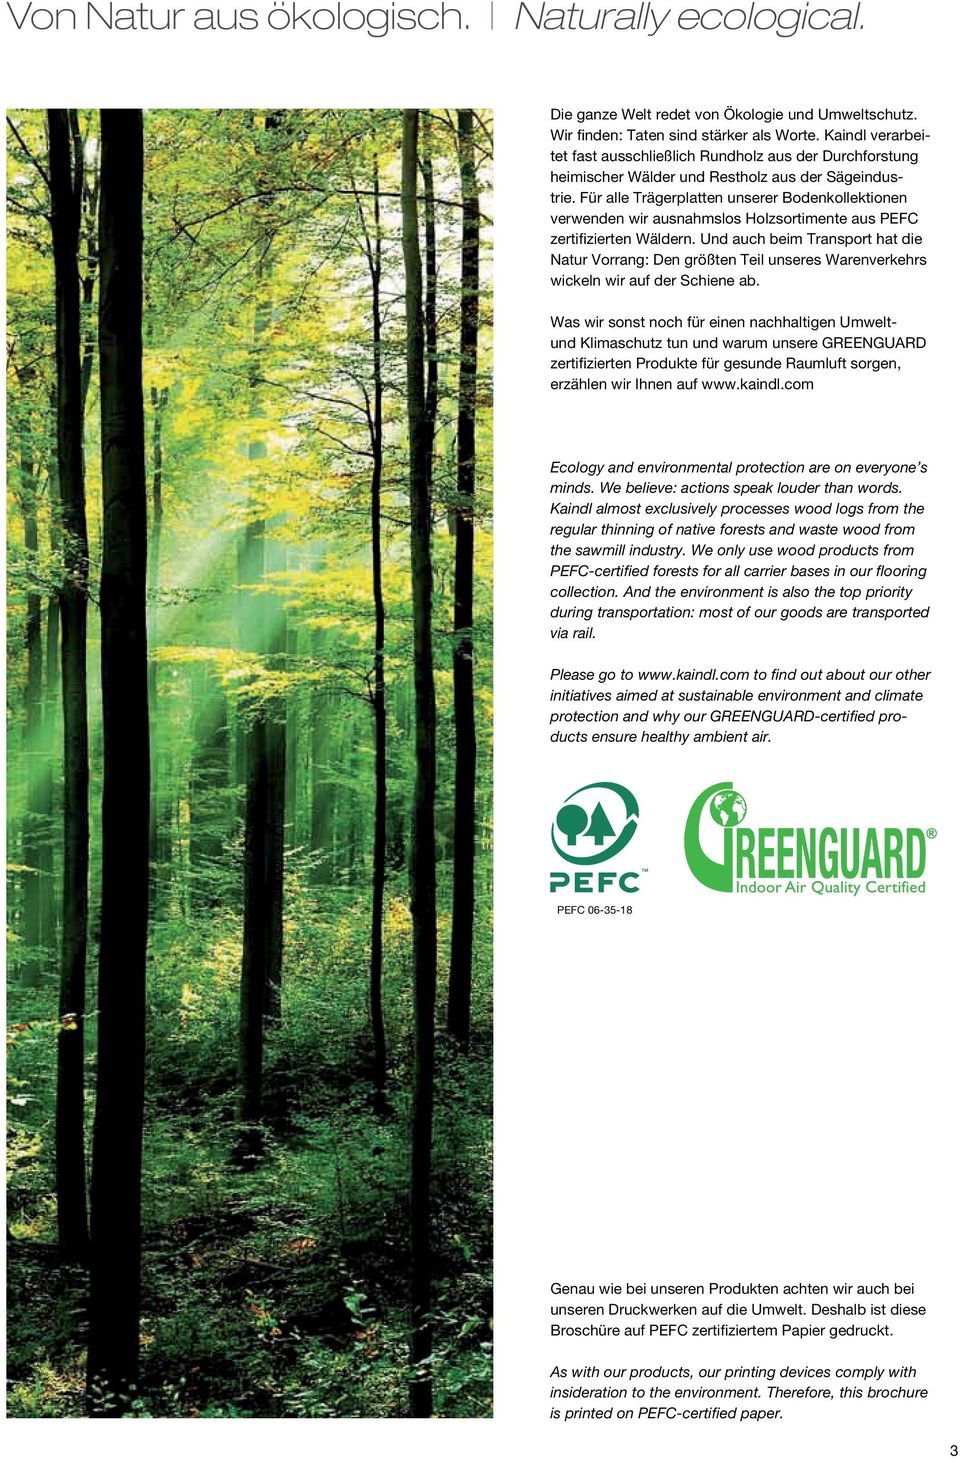 Für alle Trägerplatten unserer Bodenkollektionen verwenden wir ausnahmslos Holzsortimente aus PEFC zertifizierten Wäldern.